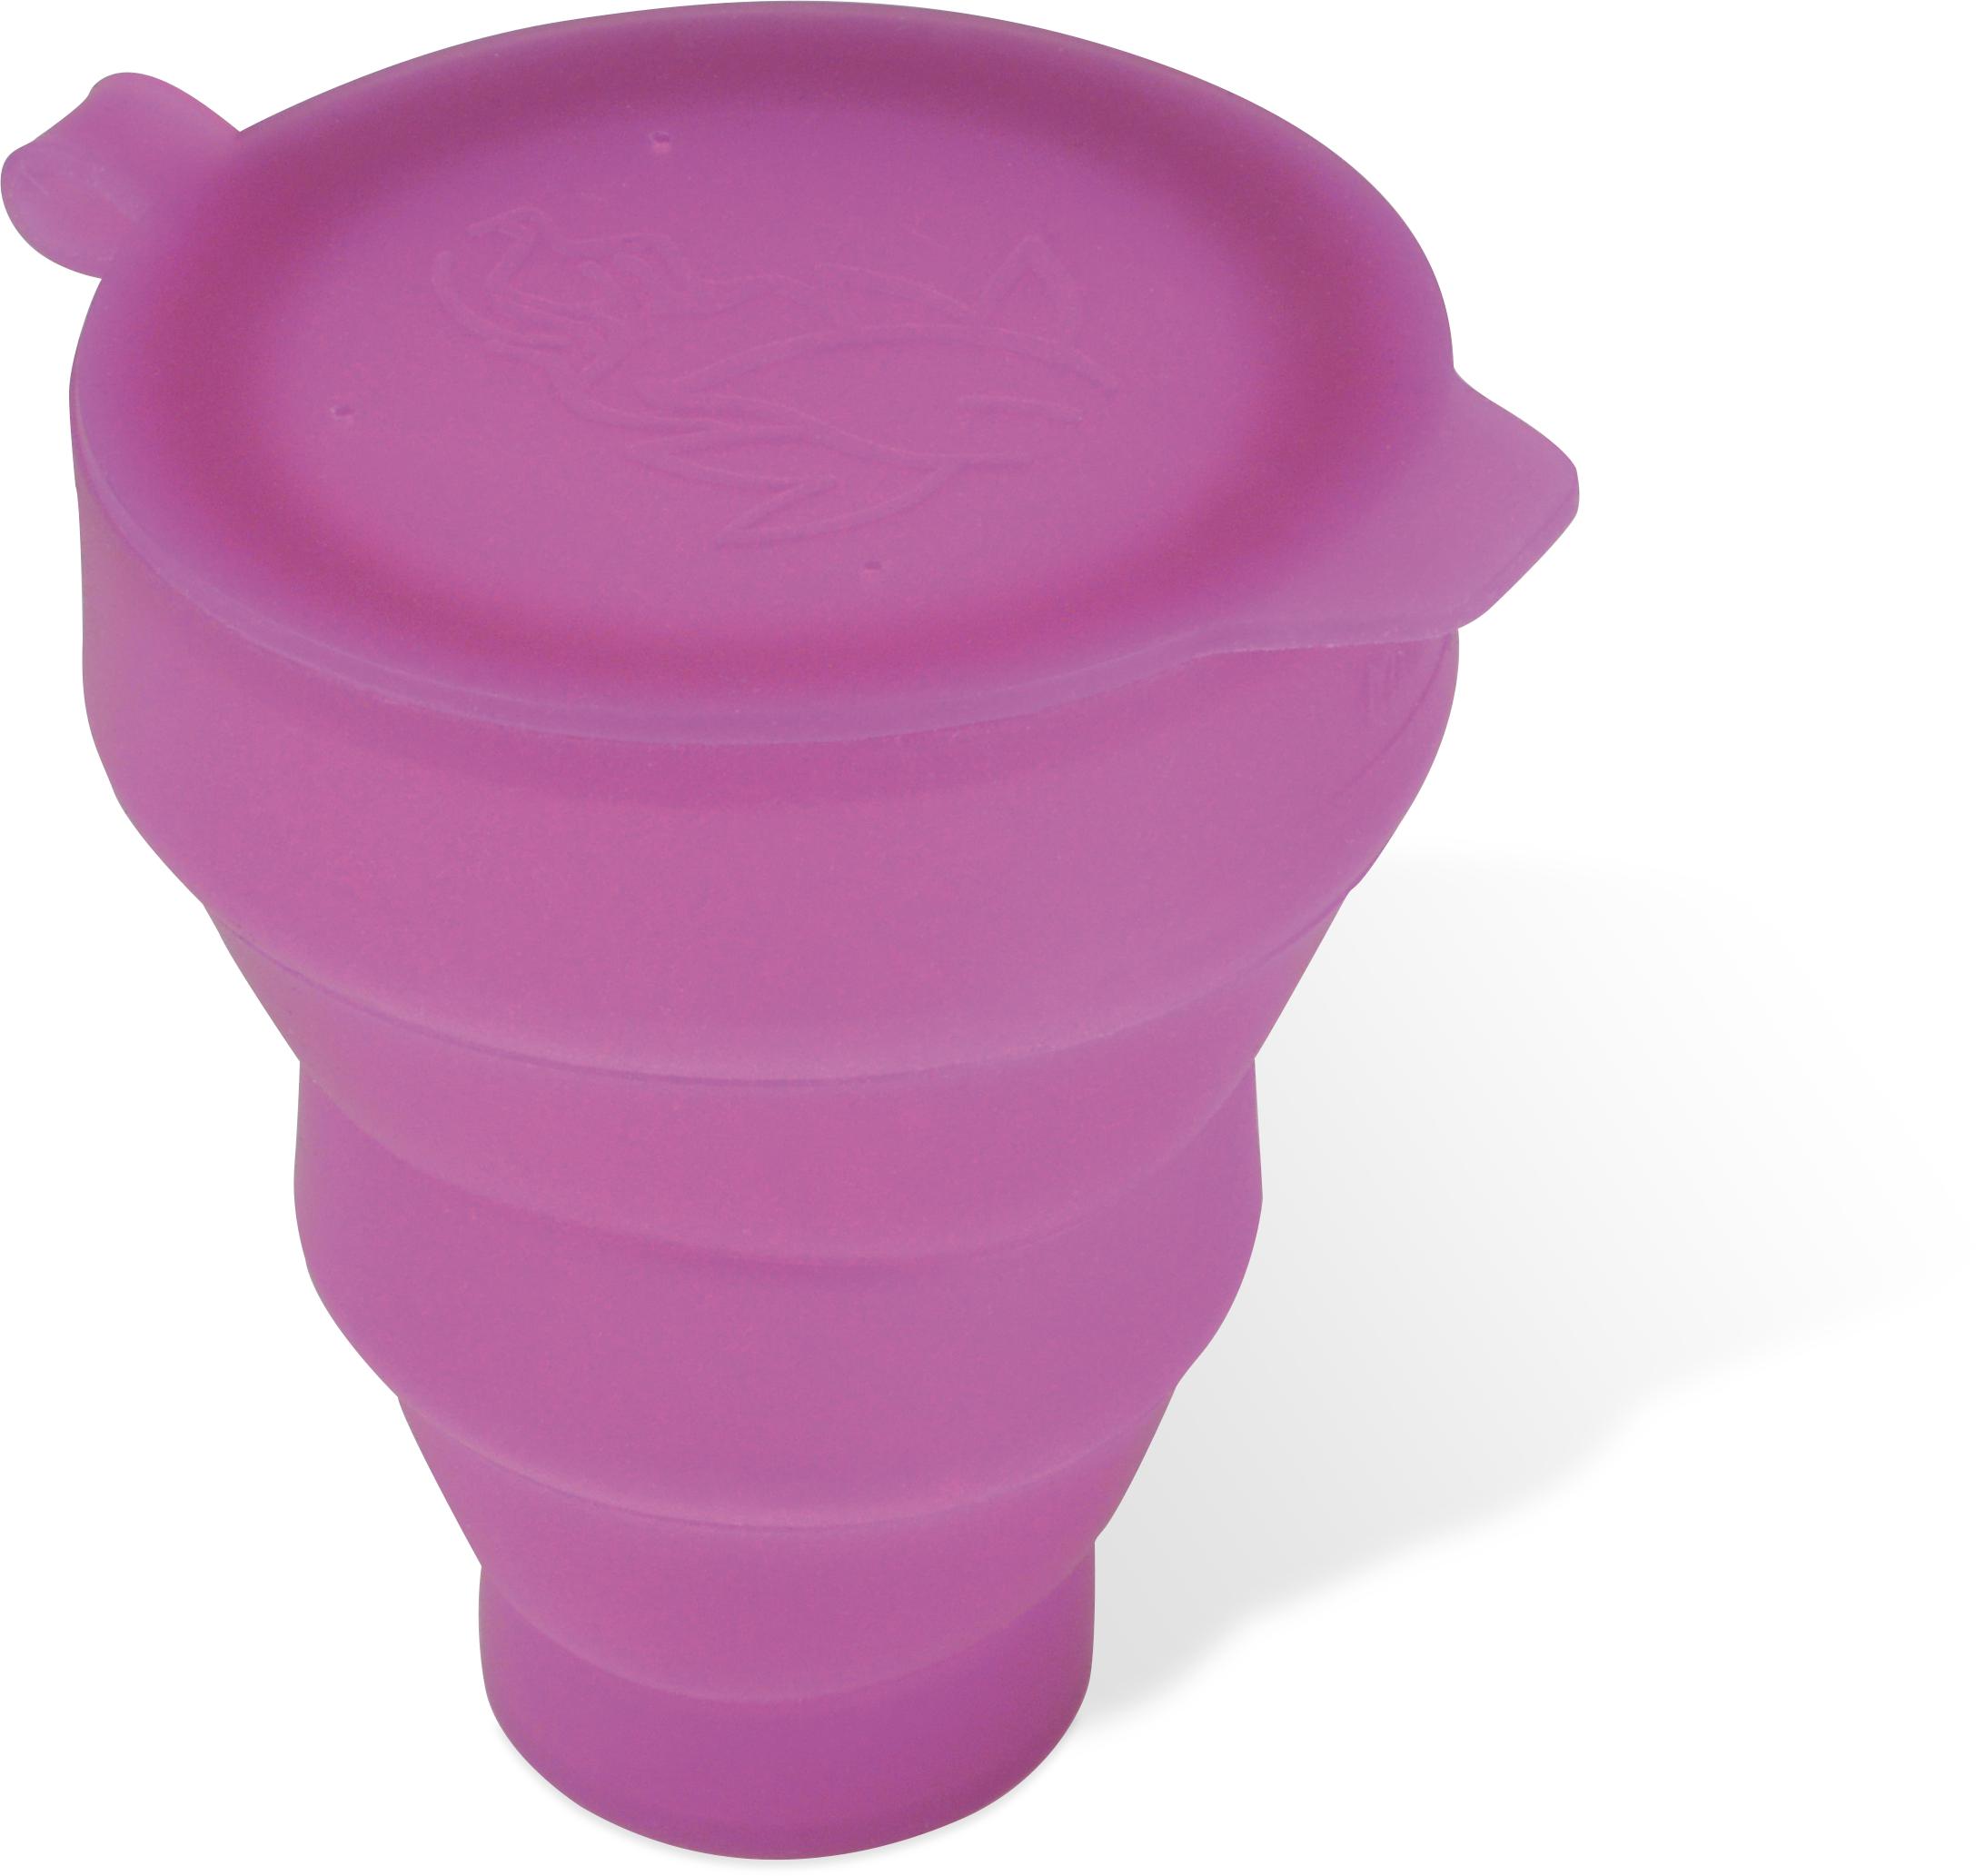 Le stérilisateur polyvalent pour cup. Remplisser le stérilisateur d'eau, plonger la cup et 1 minute au micro-onde. Une stérilisation efficace, rapide, nomade et transportable.